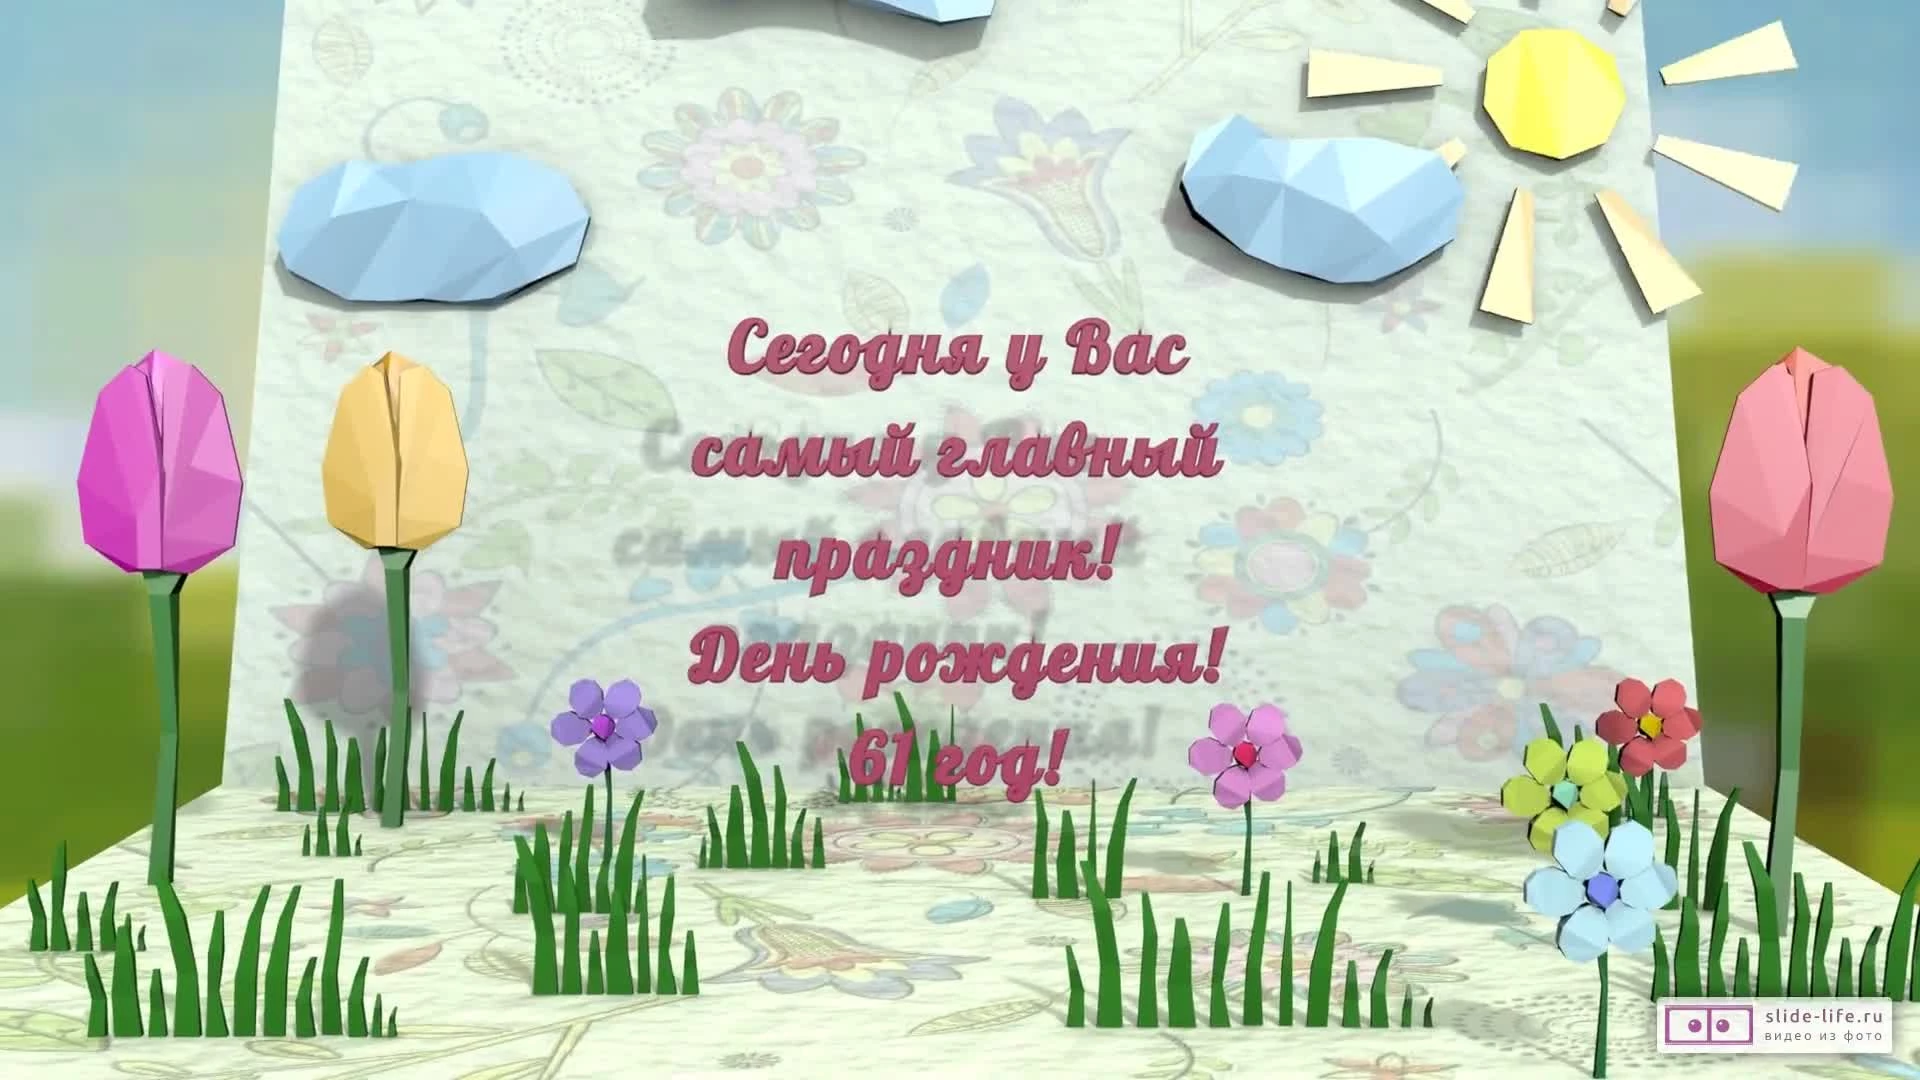 Стильное видео поздравление с днем рождения мужчине 61 год — Slide-Life.ru